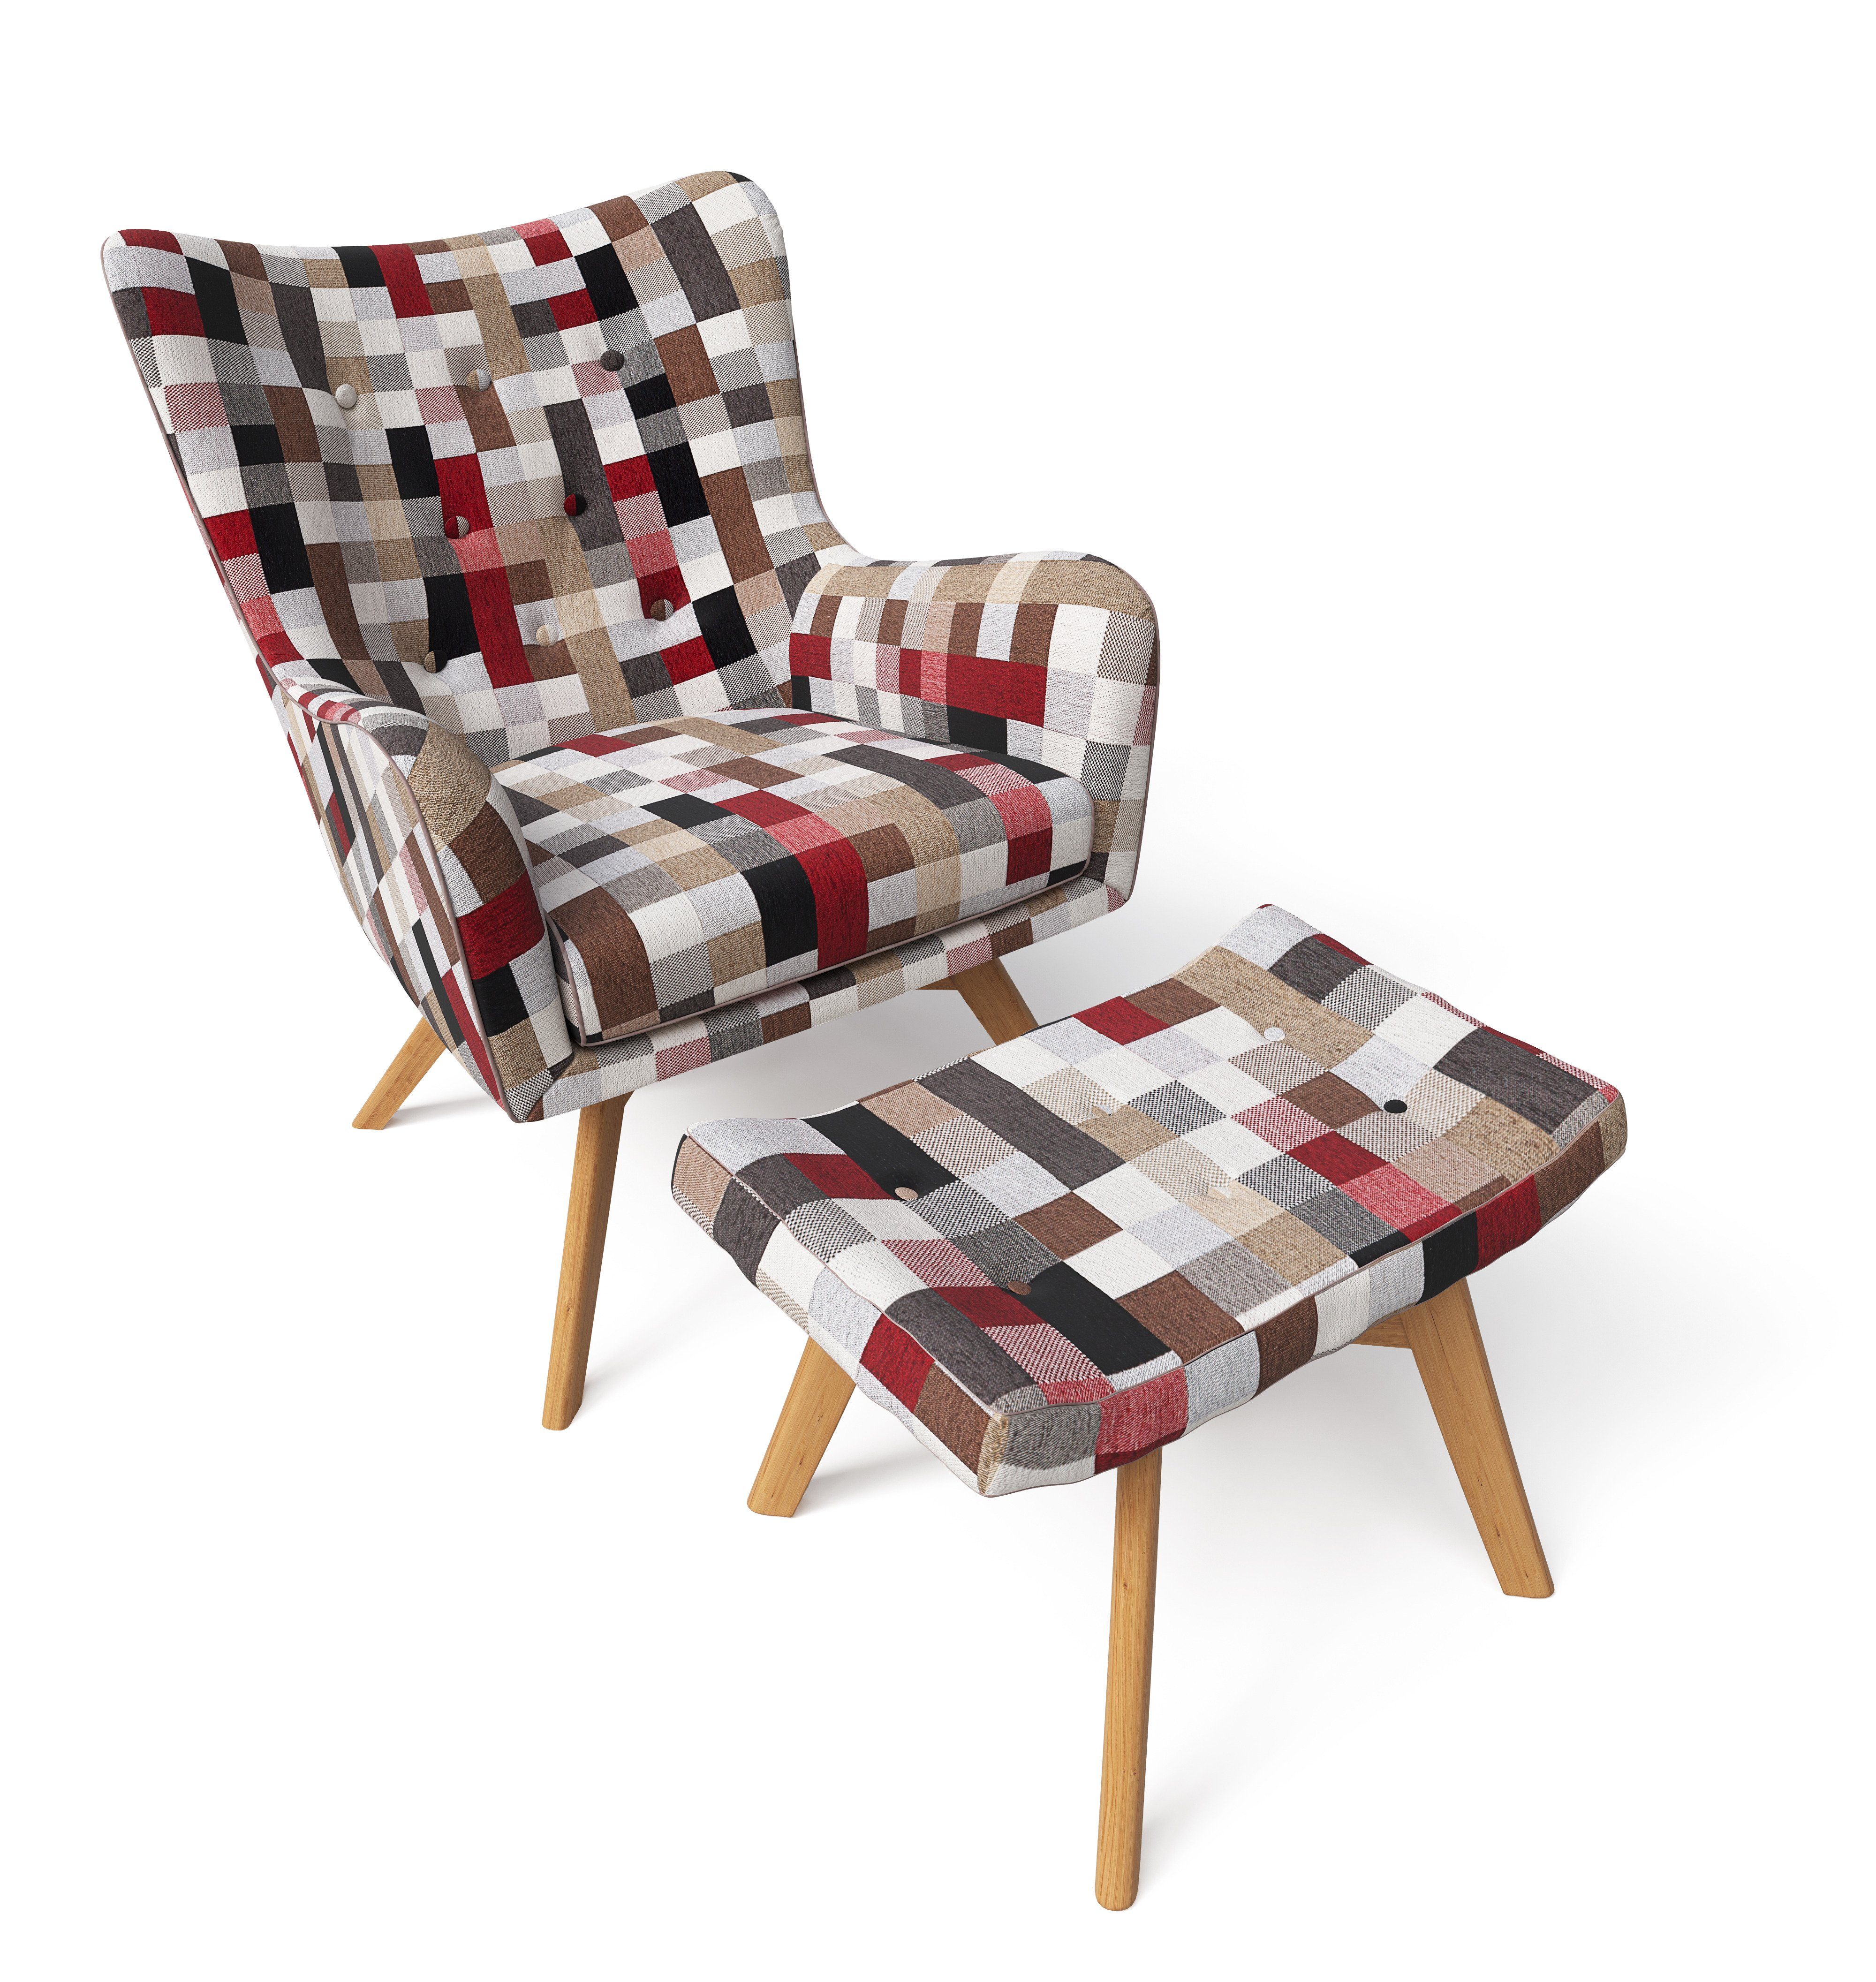 Sessel mit Supellex bunt Hocker Supellex Design gedeckt Sessel Patchwork kariert